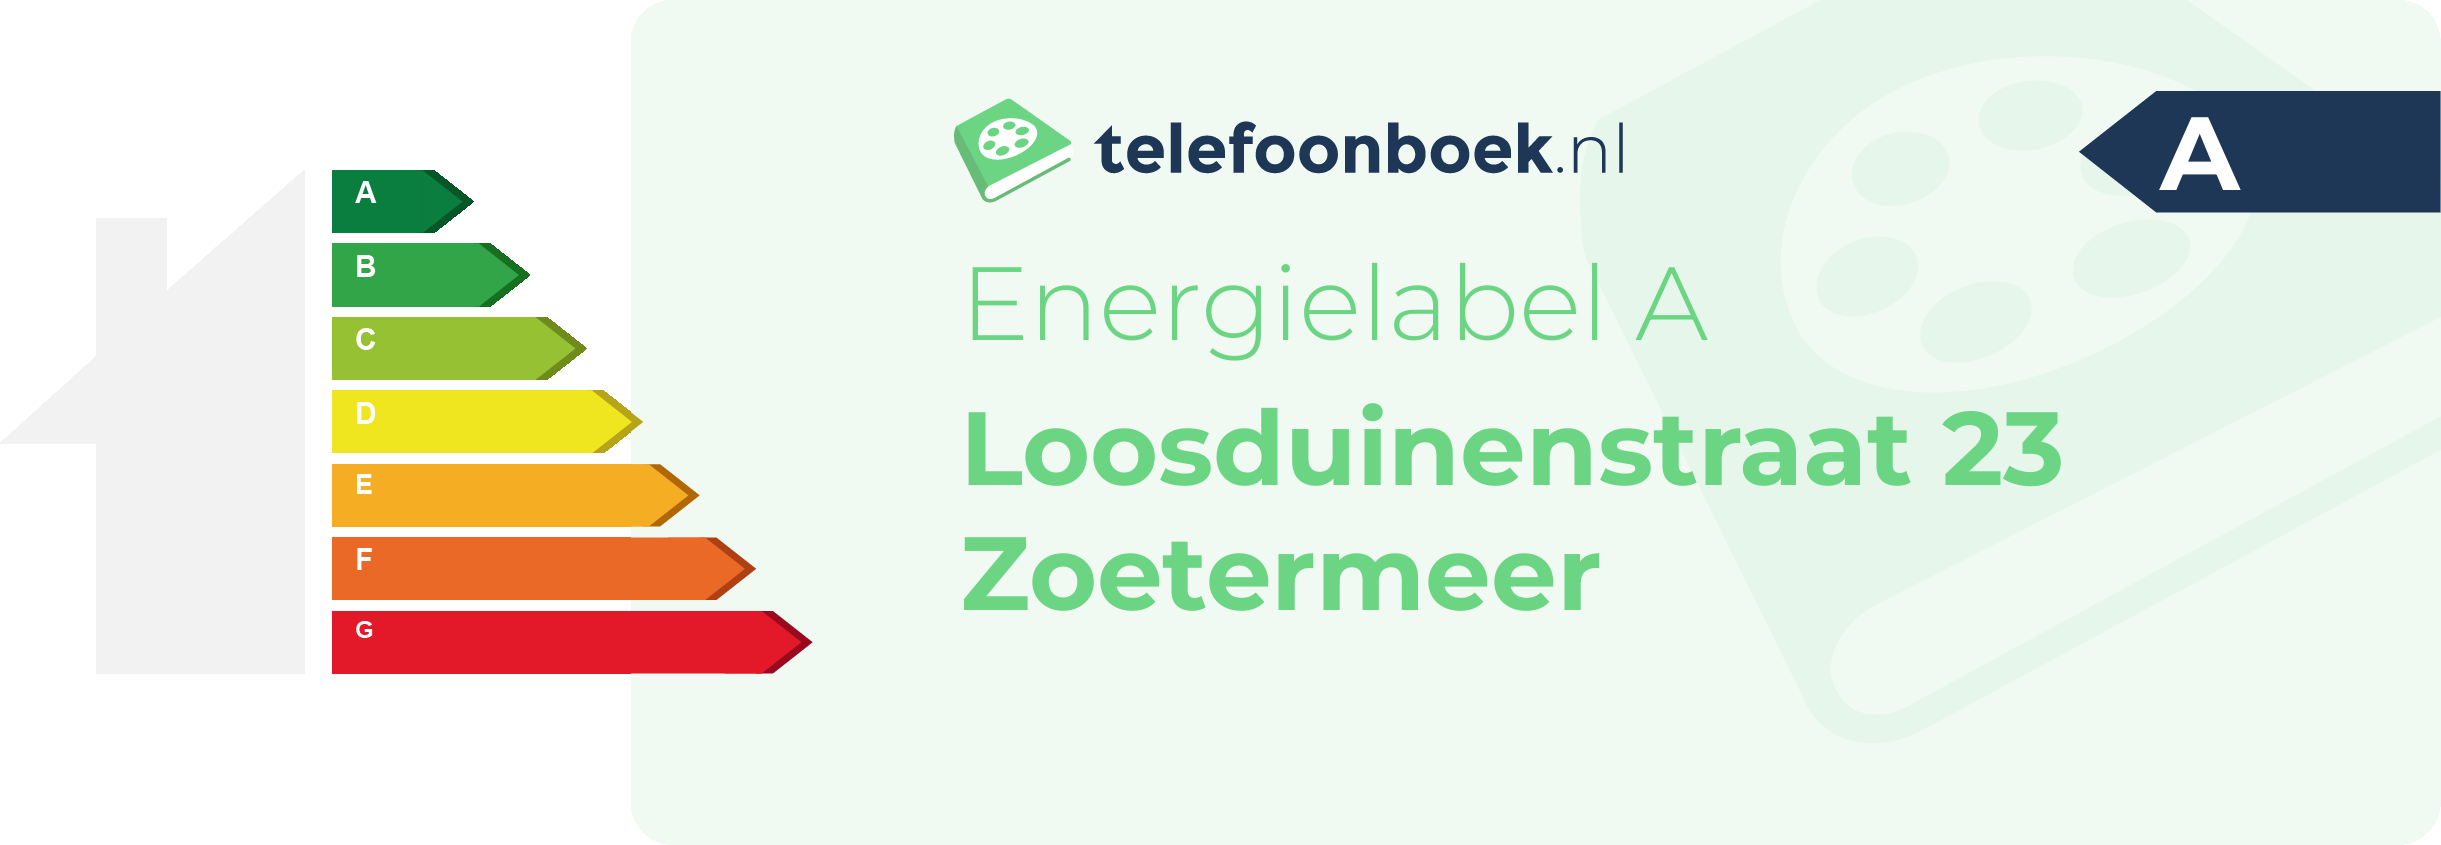 Energielabel Loosduinenstraat 23 Zoetermeer